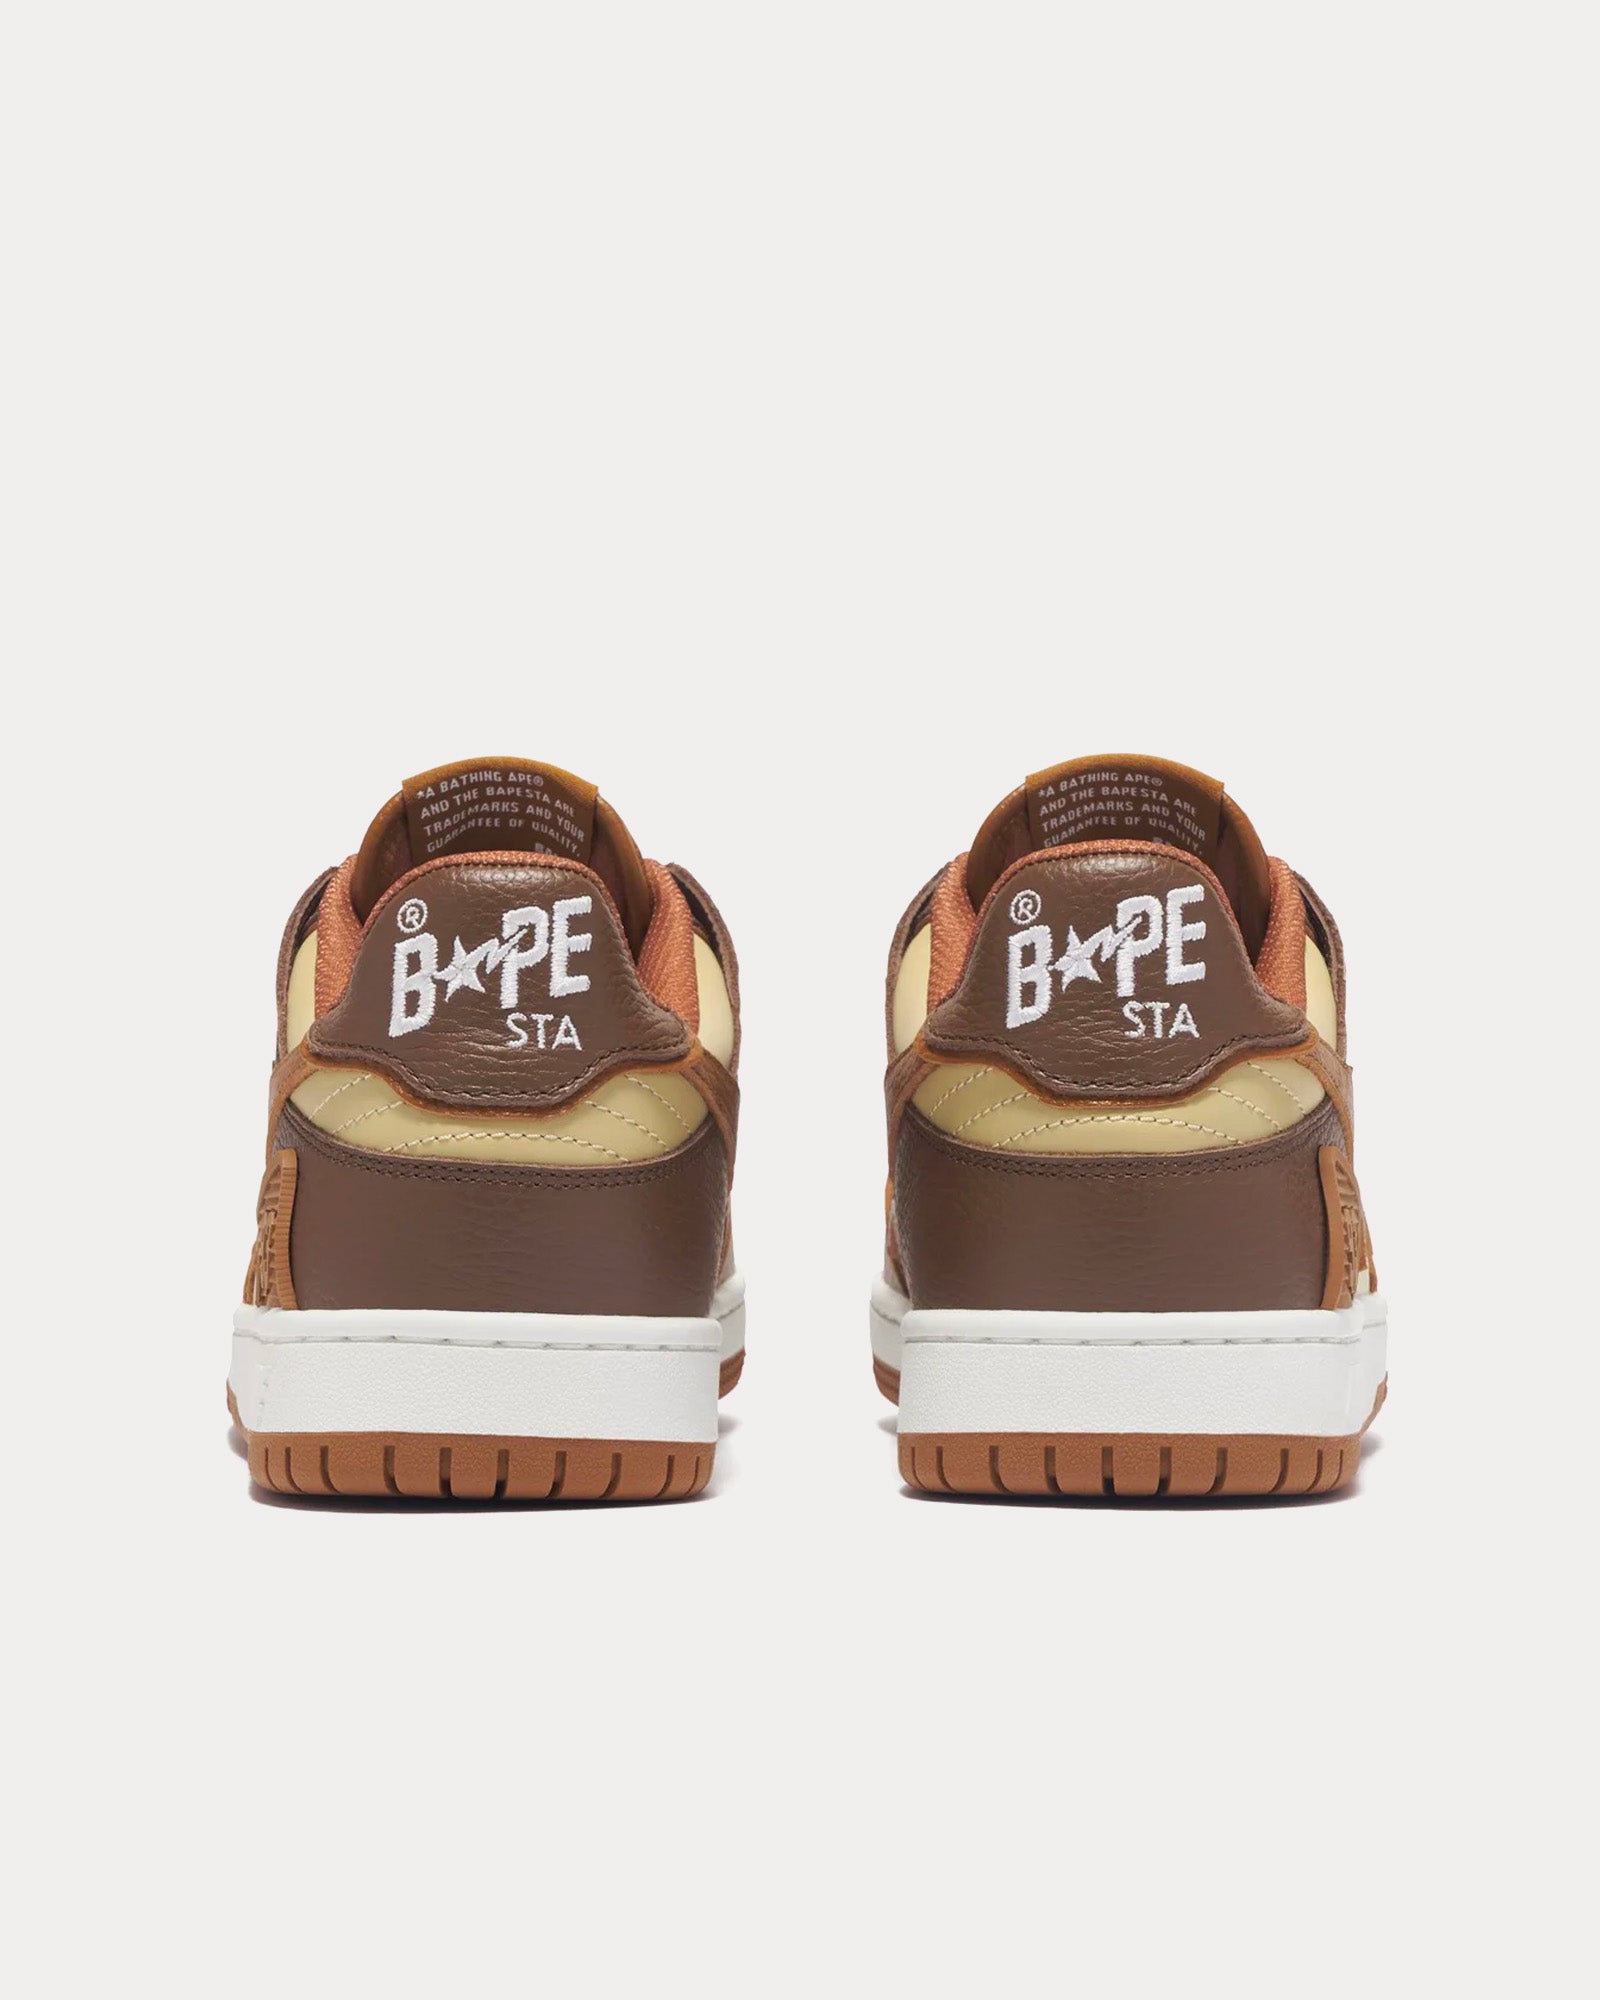 A Bathing APE - Bape Sk8 Sta #5 Brown / Beige Low Top Sneakers